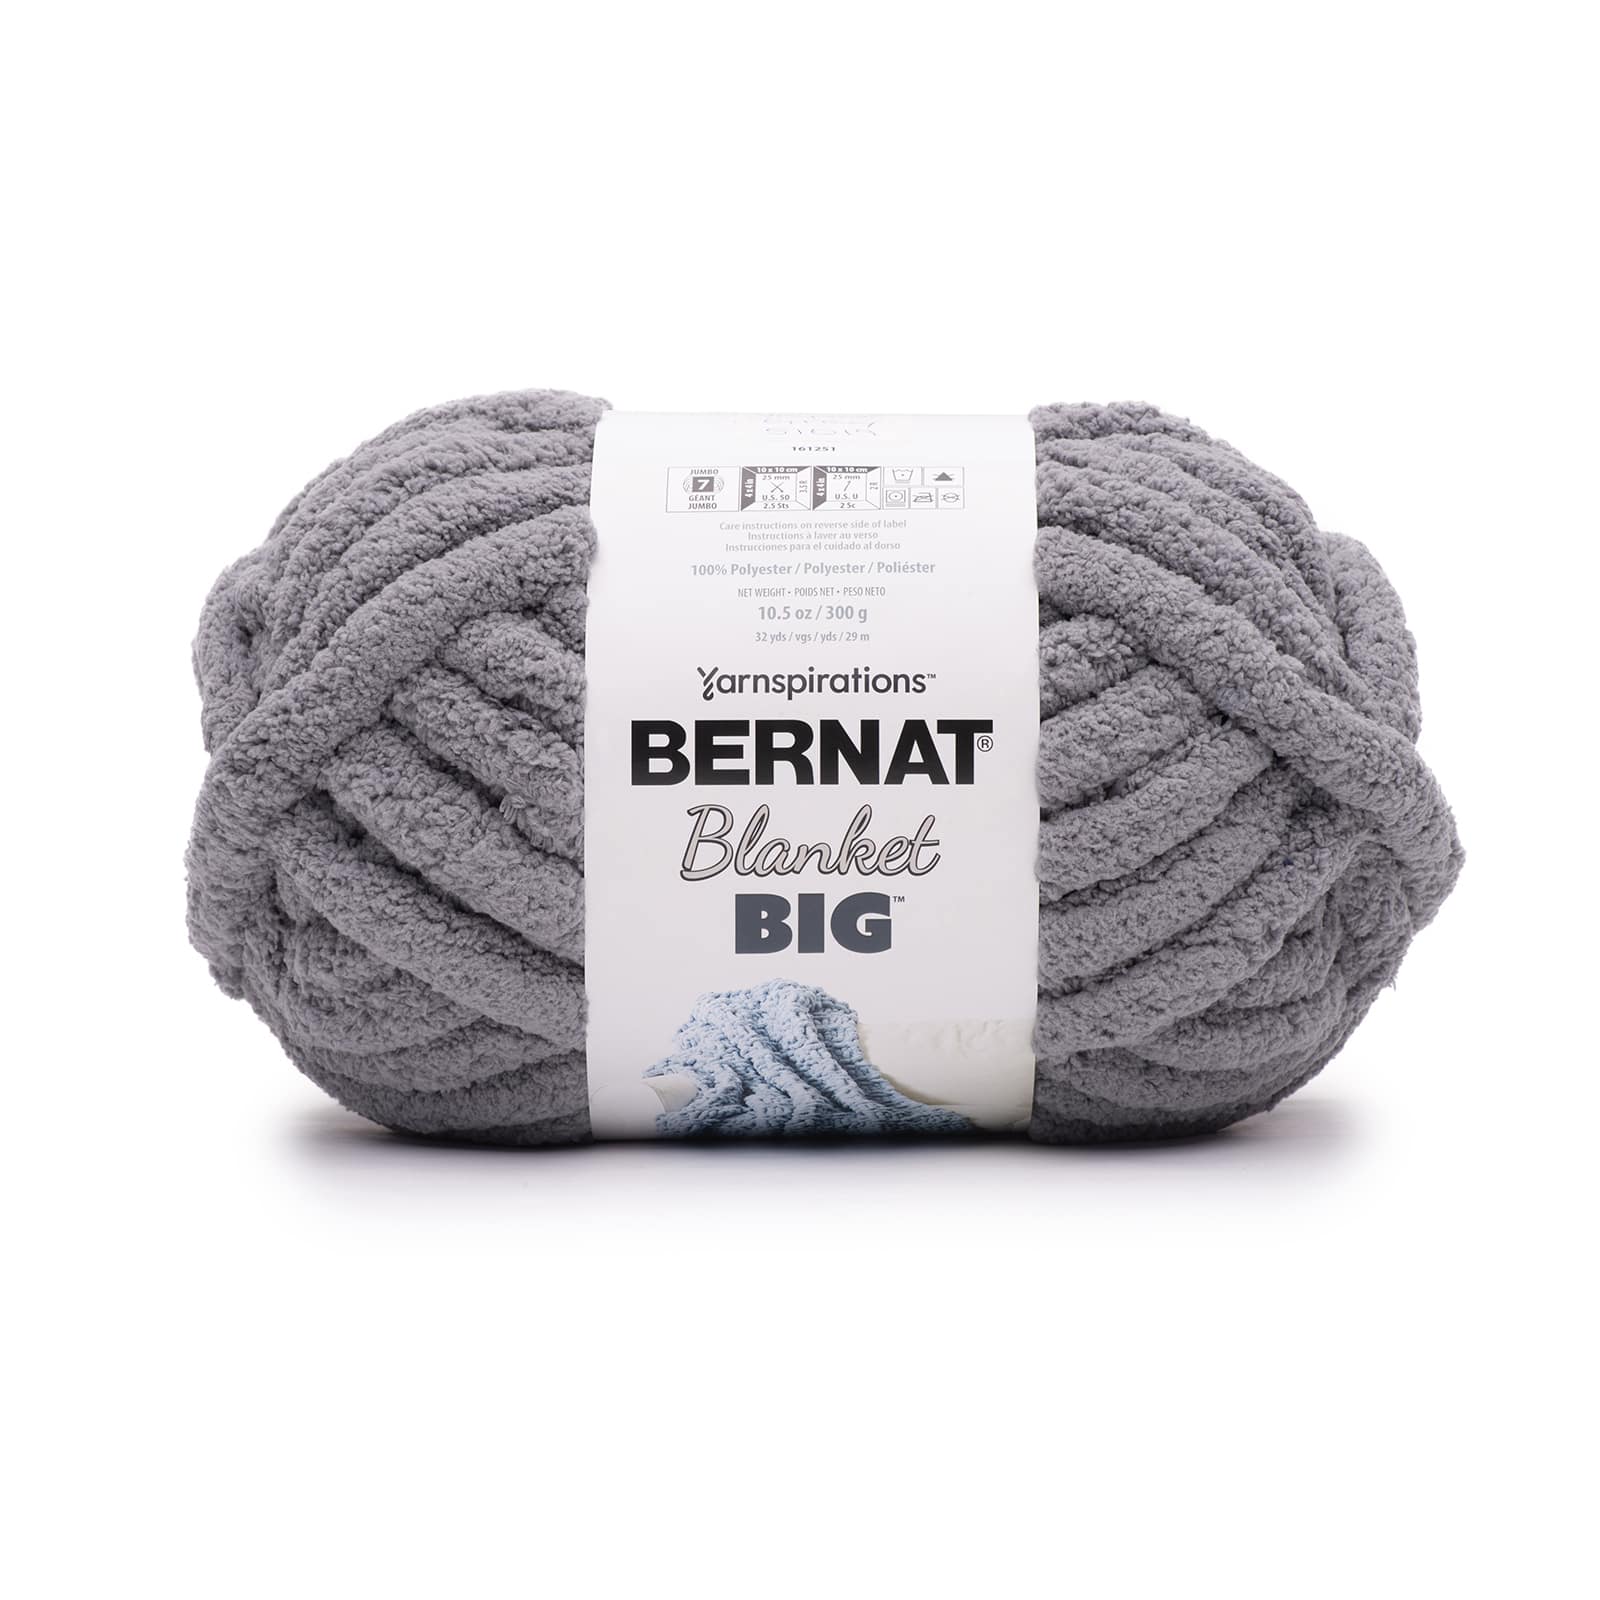 MUSHROOM Bernat Blanket BIG Yarn, 10.5 Oz /300 G, 32 Yards/29m